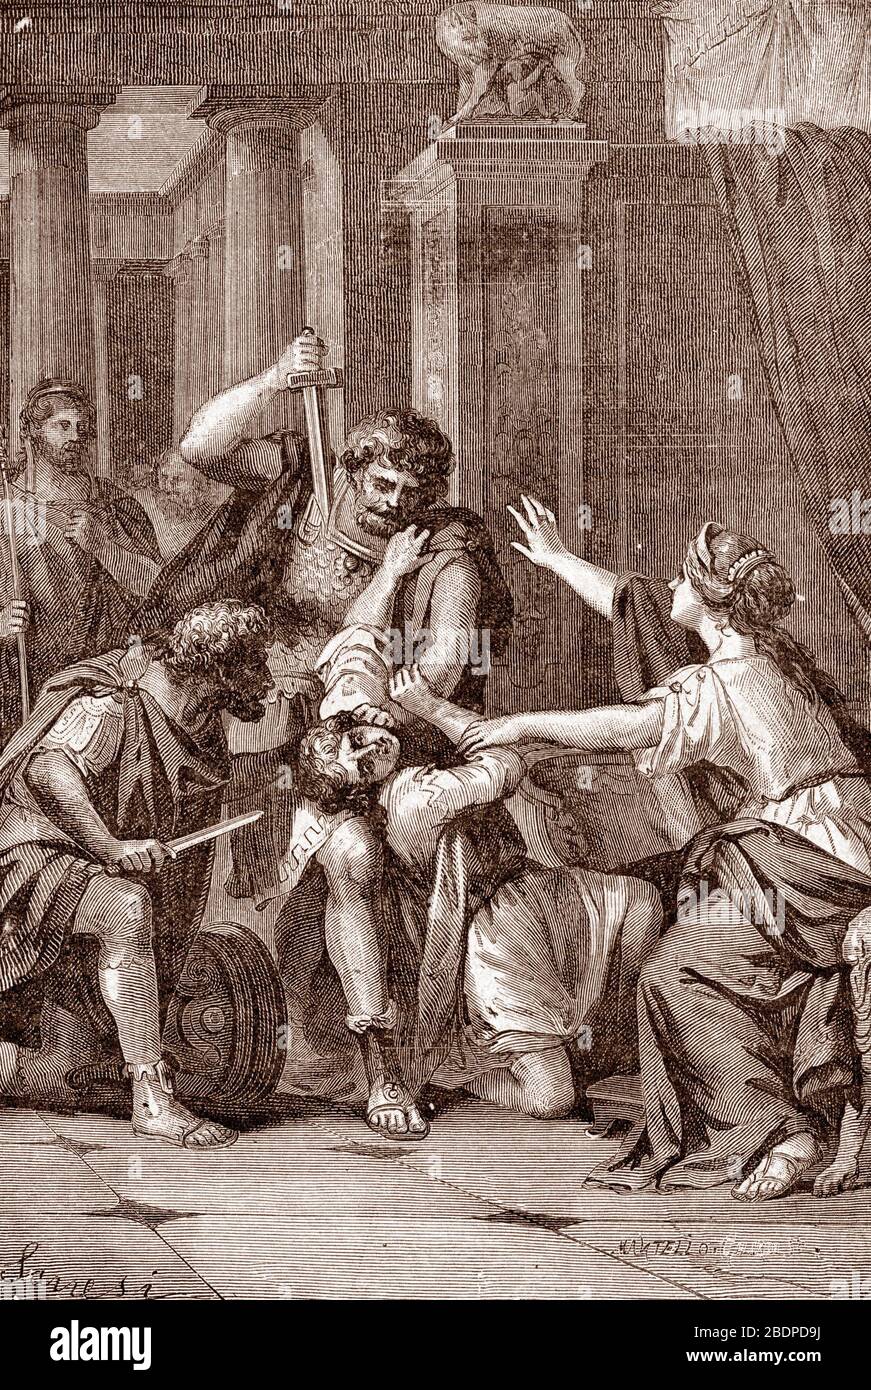 "L'empereur romain Caracalla (188-217) Assassine Son frere Geta dans le bras de sa mere en 211" (der römische Kaiser Caracalla (188-217) ermordete seinen br Stockfoto